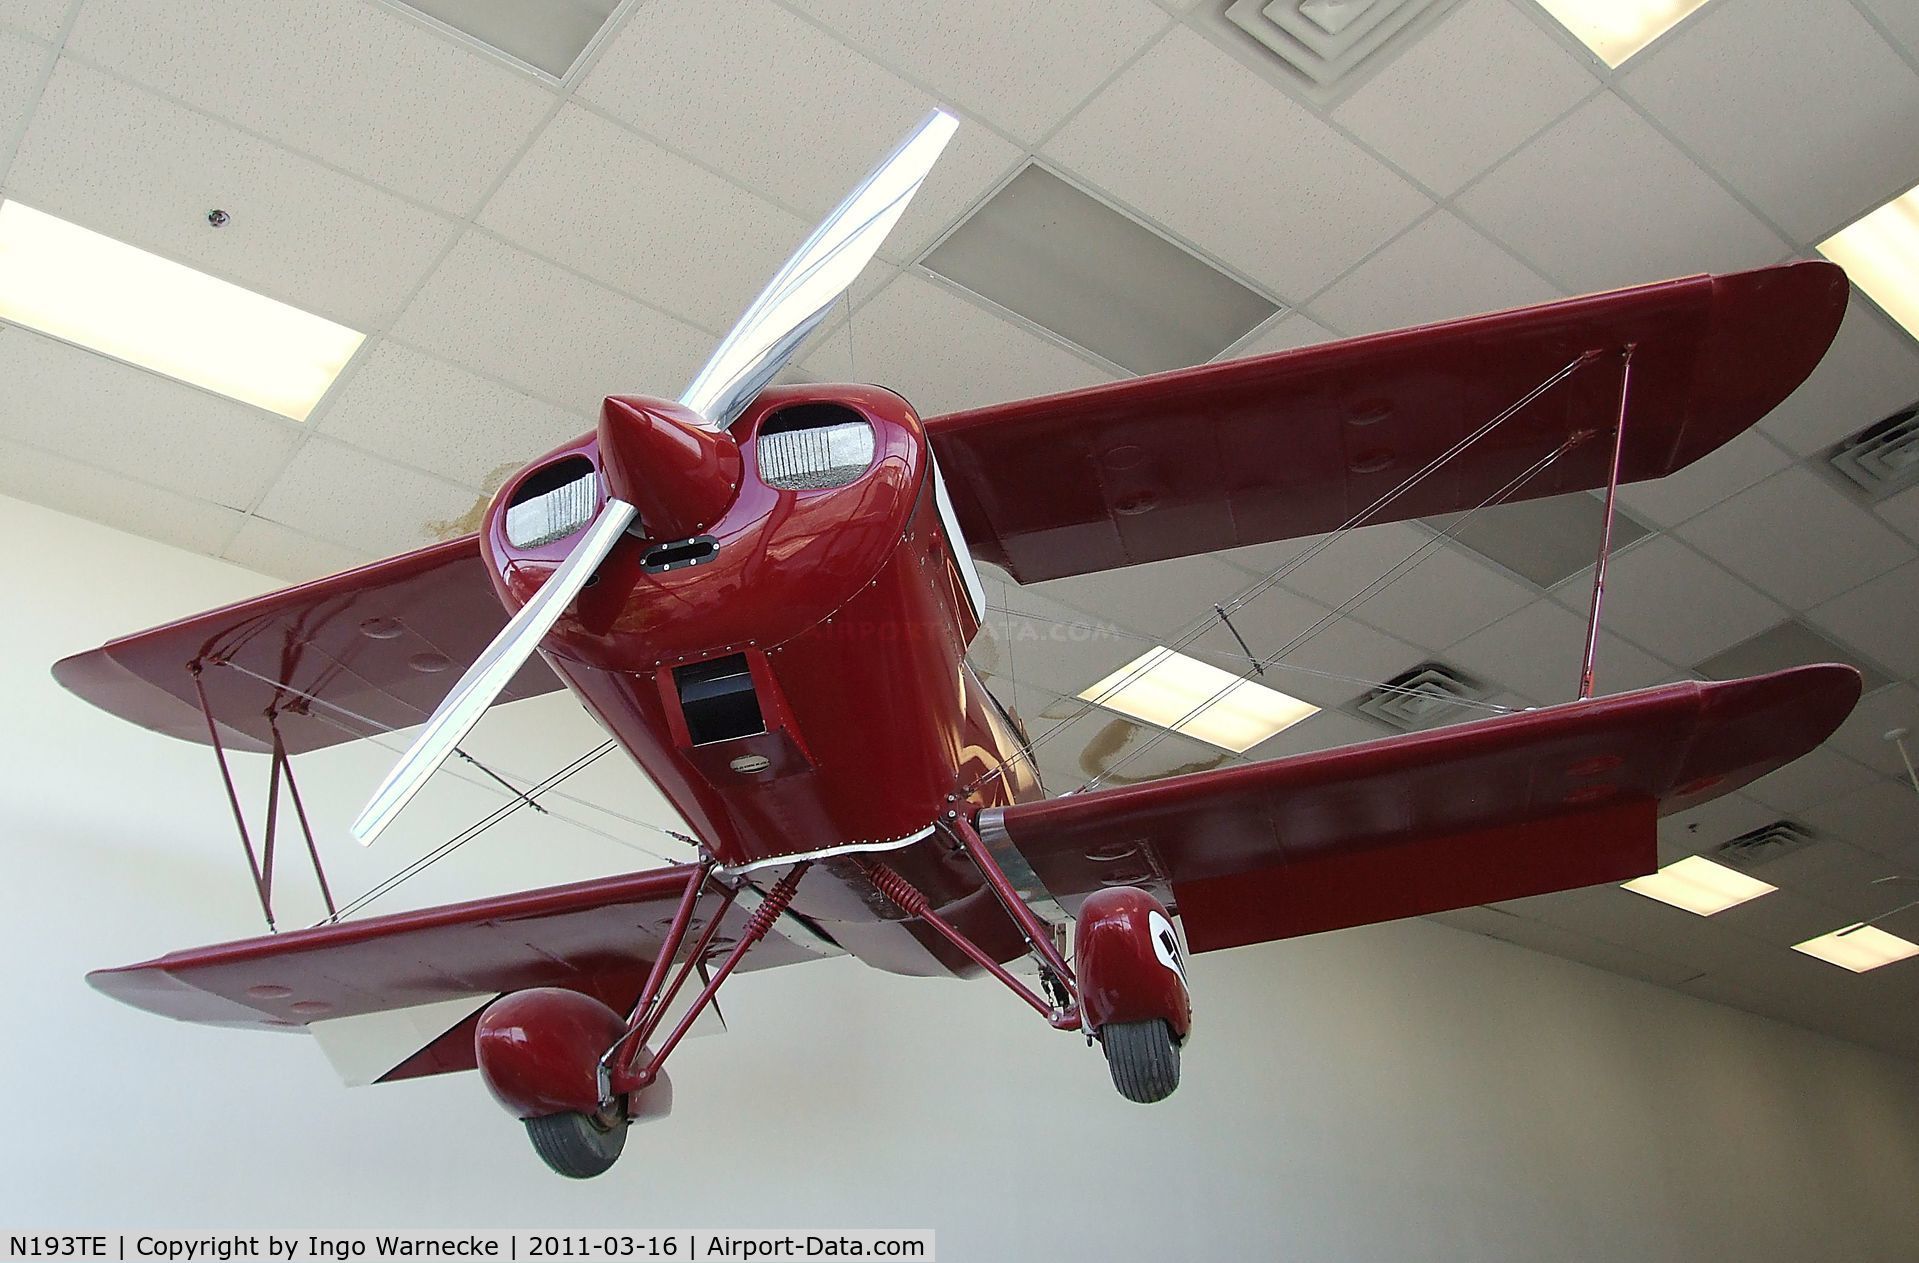 N193TE, Oldfield BABY LAKES C/N 001 (N193TE), Thomas D Emery Sorta Baby Lakes at the Planes of Fame Air Museum, Valle AZ